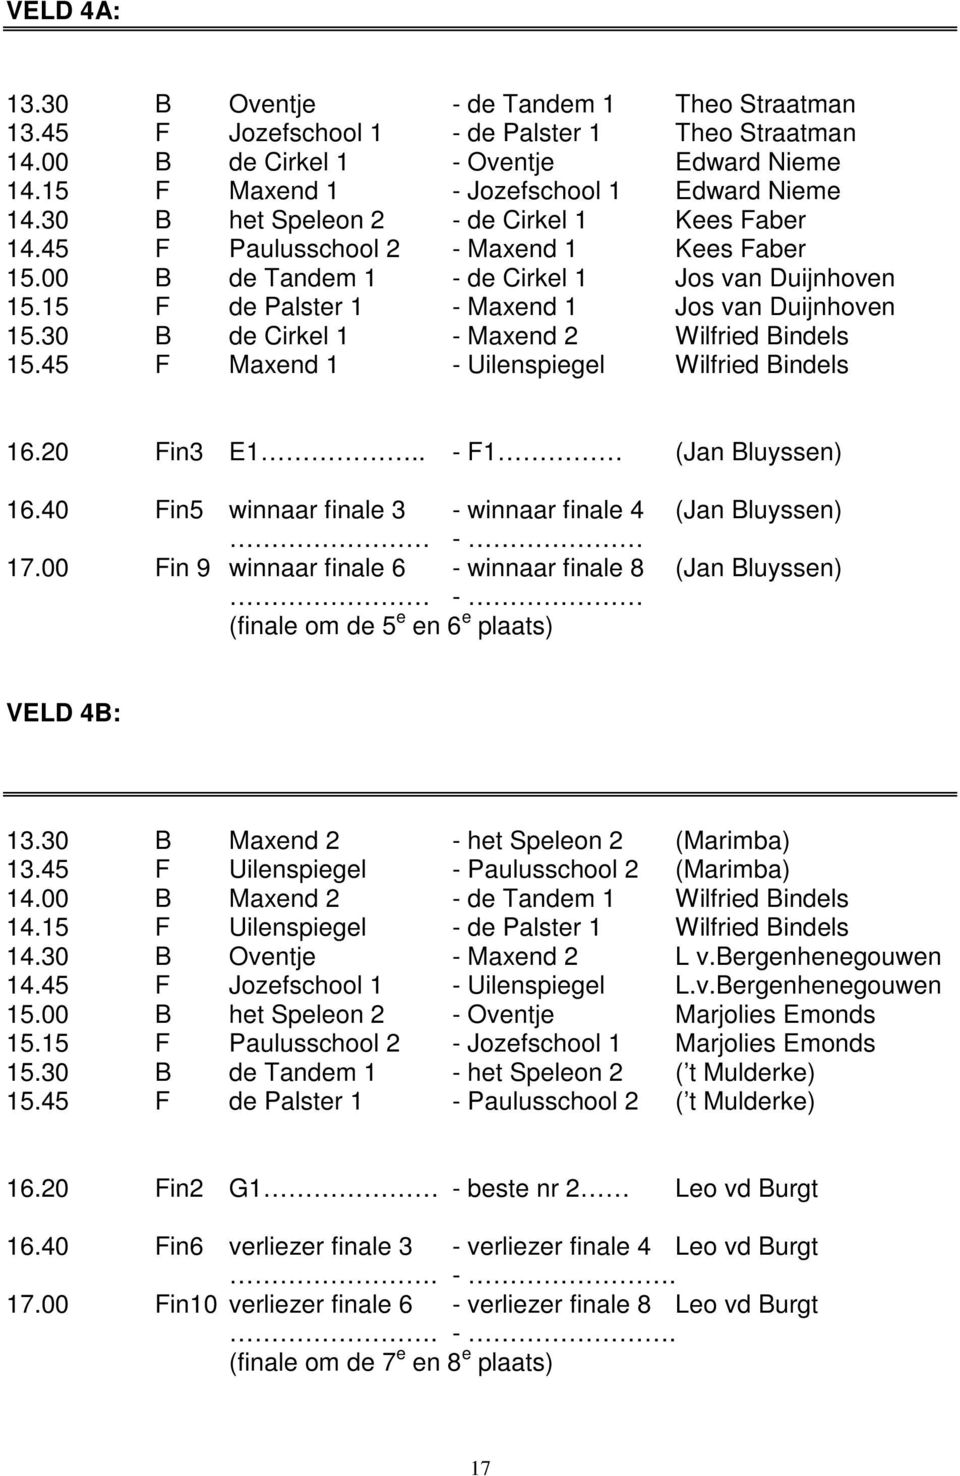 30 B de Cirkel 1 - Maxend 2 Wilfried Bindels 15.45 F Maxend 1 - Uilenspiegel Wilfried Bindels 16.20 Fin3 E1.. - F1 (Jan Bluyssen) 16.40 Fin5 winnaar finale 3 - winnaar finale 4 (Jan Bluyssen) - 17.